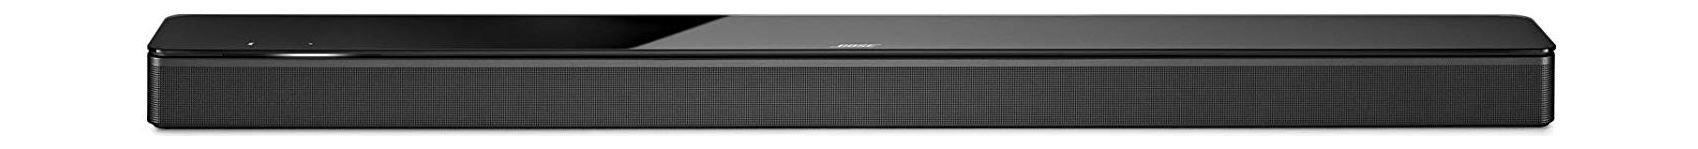 Buy Bose soundbar 700 - black in Saudi Arabia